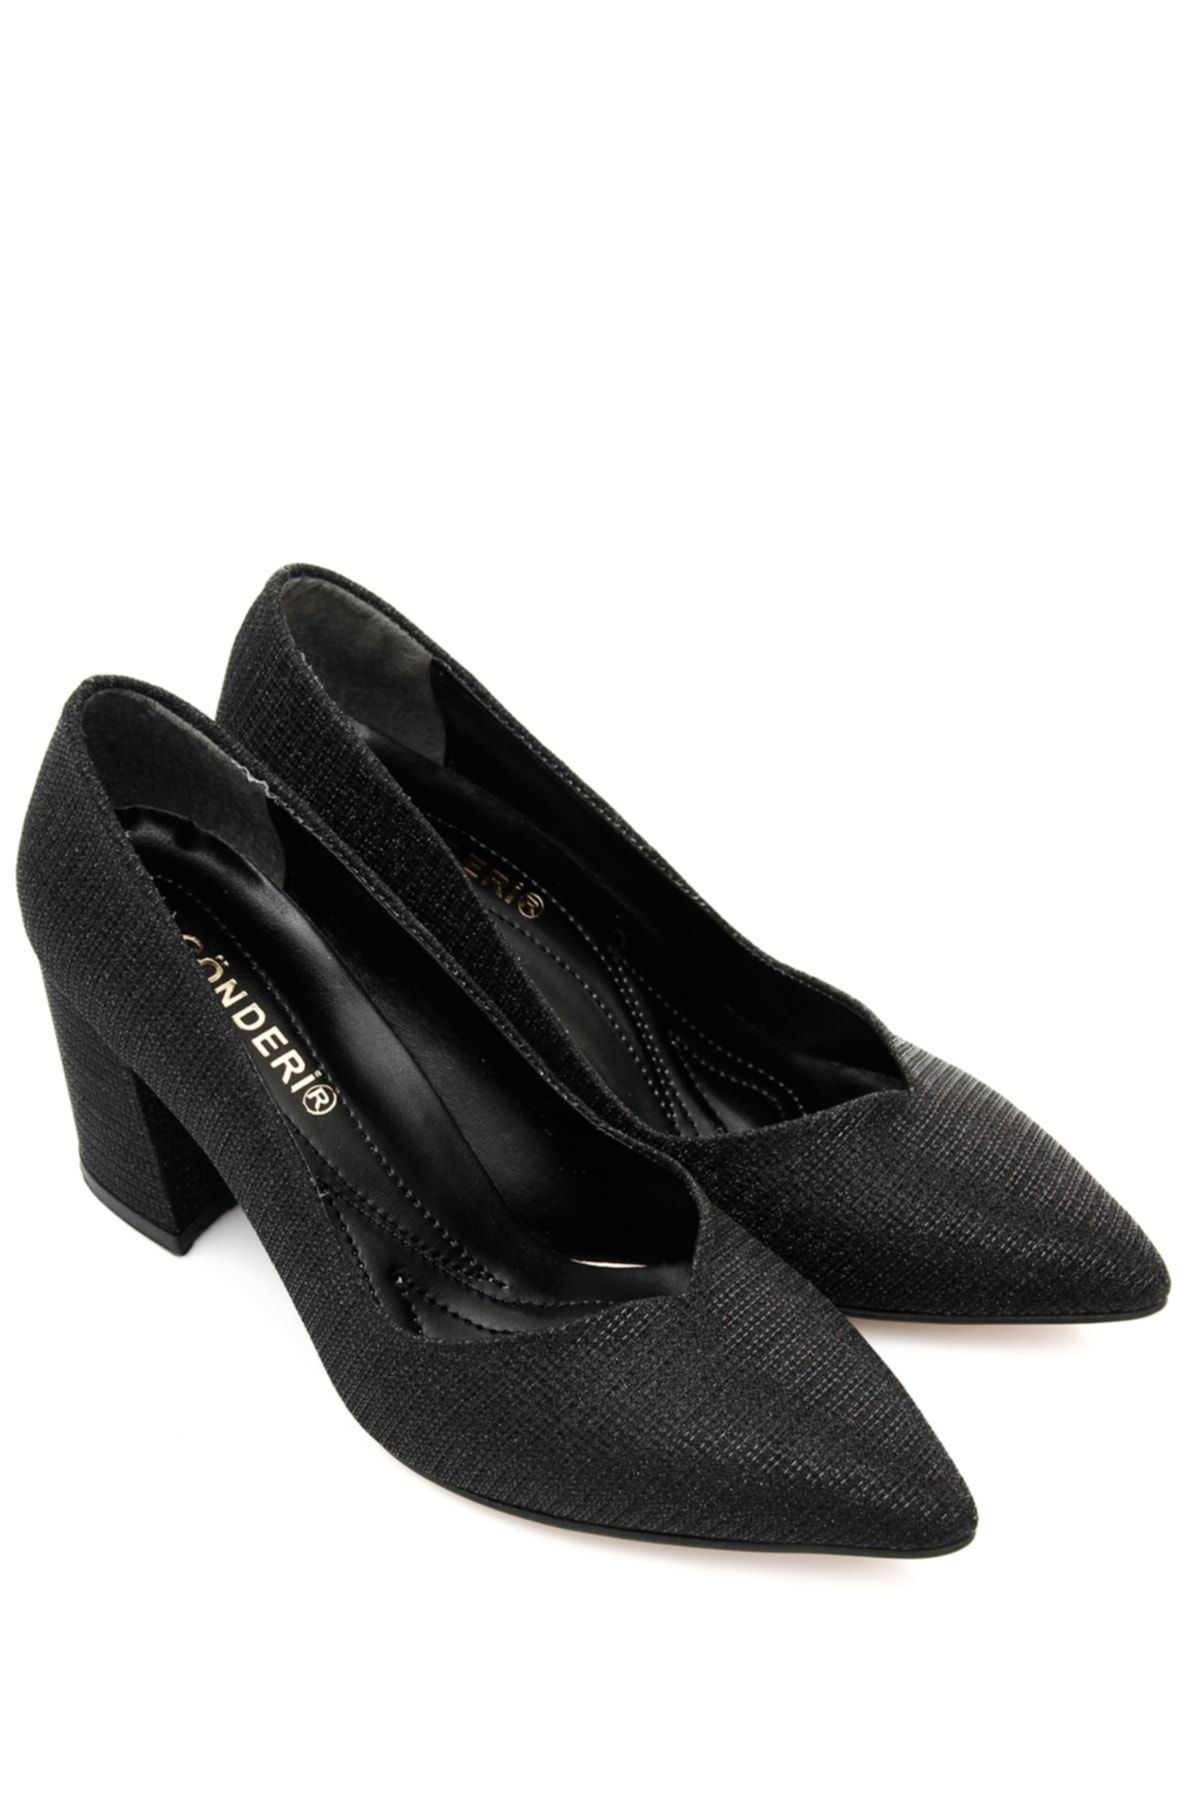 GÖNDERİ(R) Siyah Gön Kadın Topuklu Ayakkabı 38055